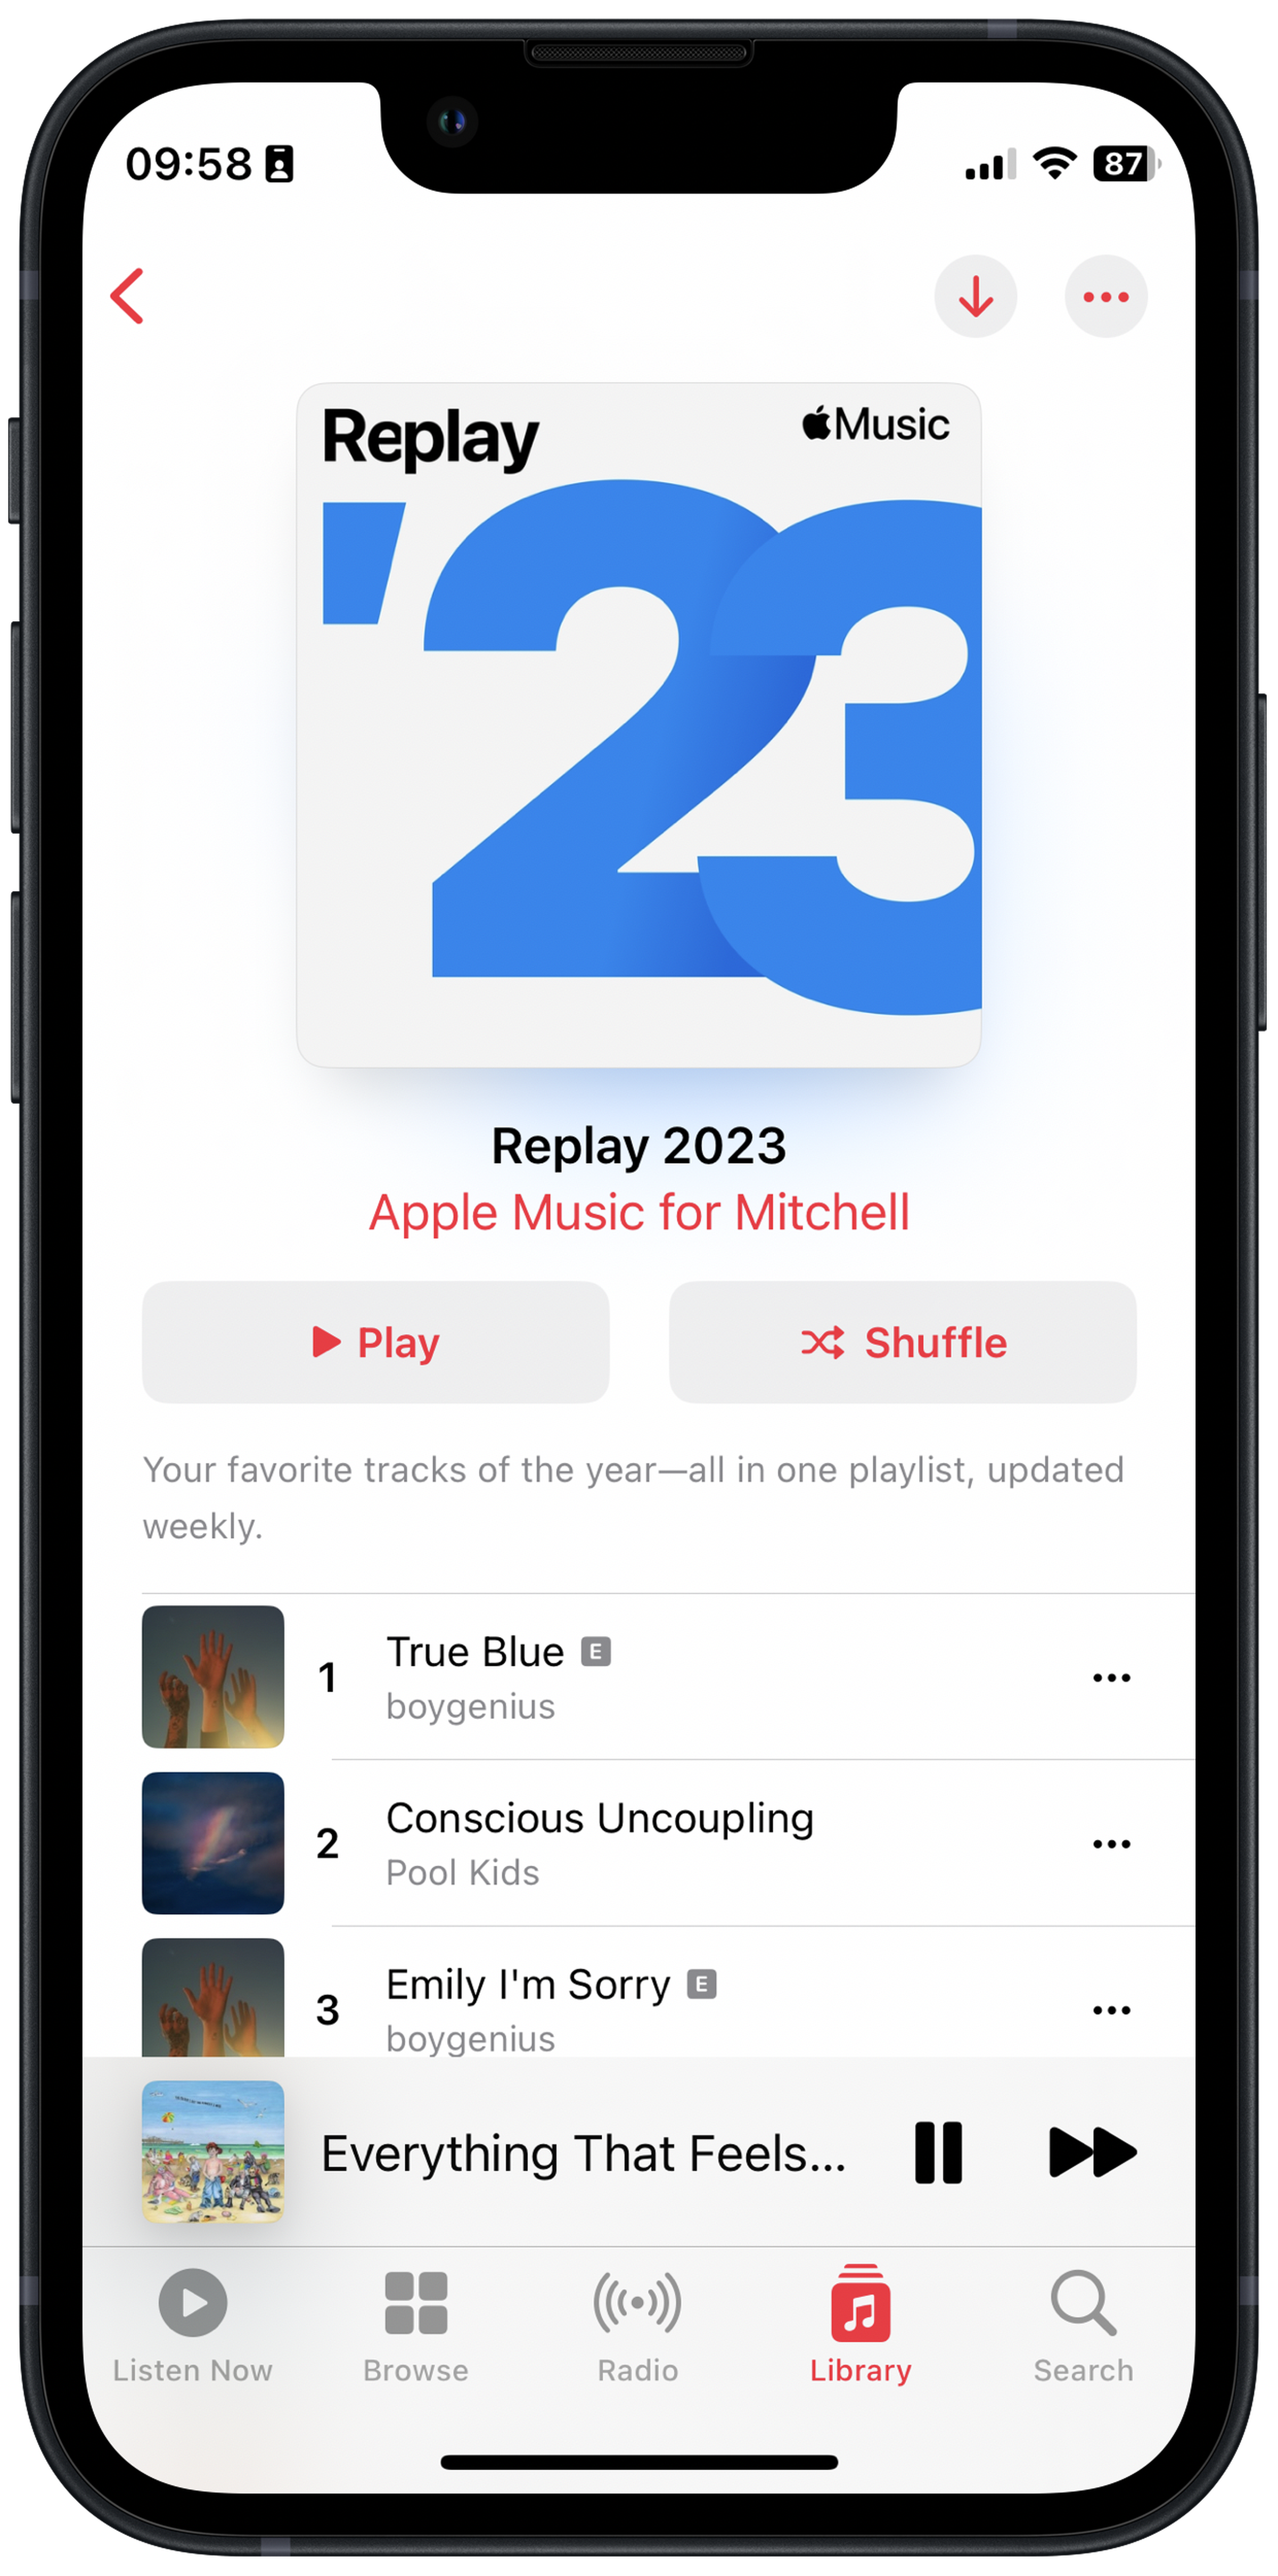 La lista de reproducción de Apple Music Replay 2023 está aquí para realizar un seguimiento de tus canciones favoritas